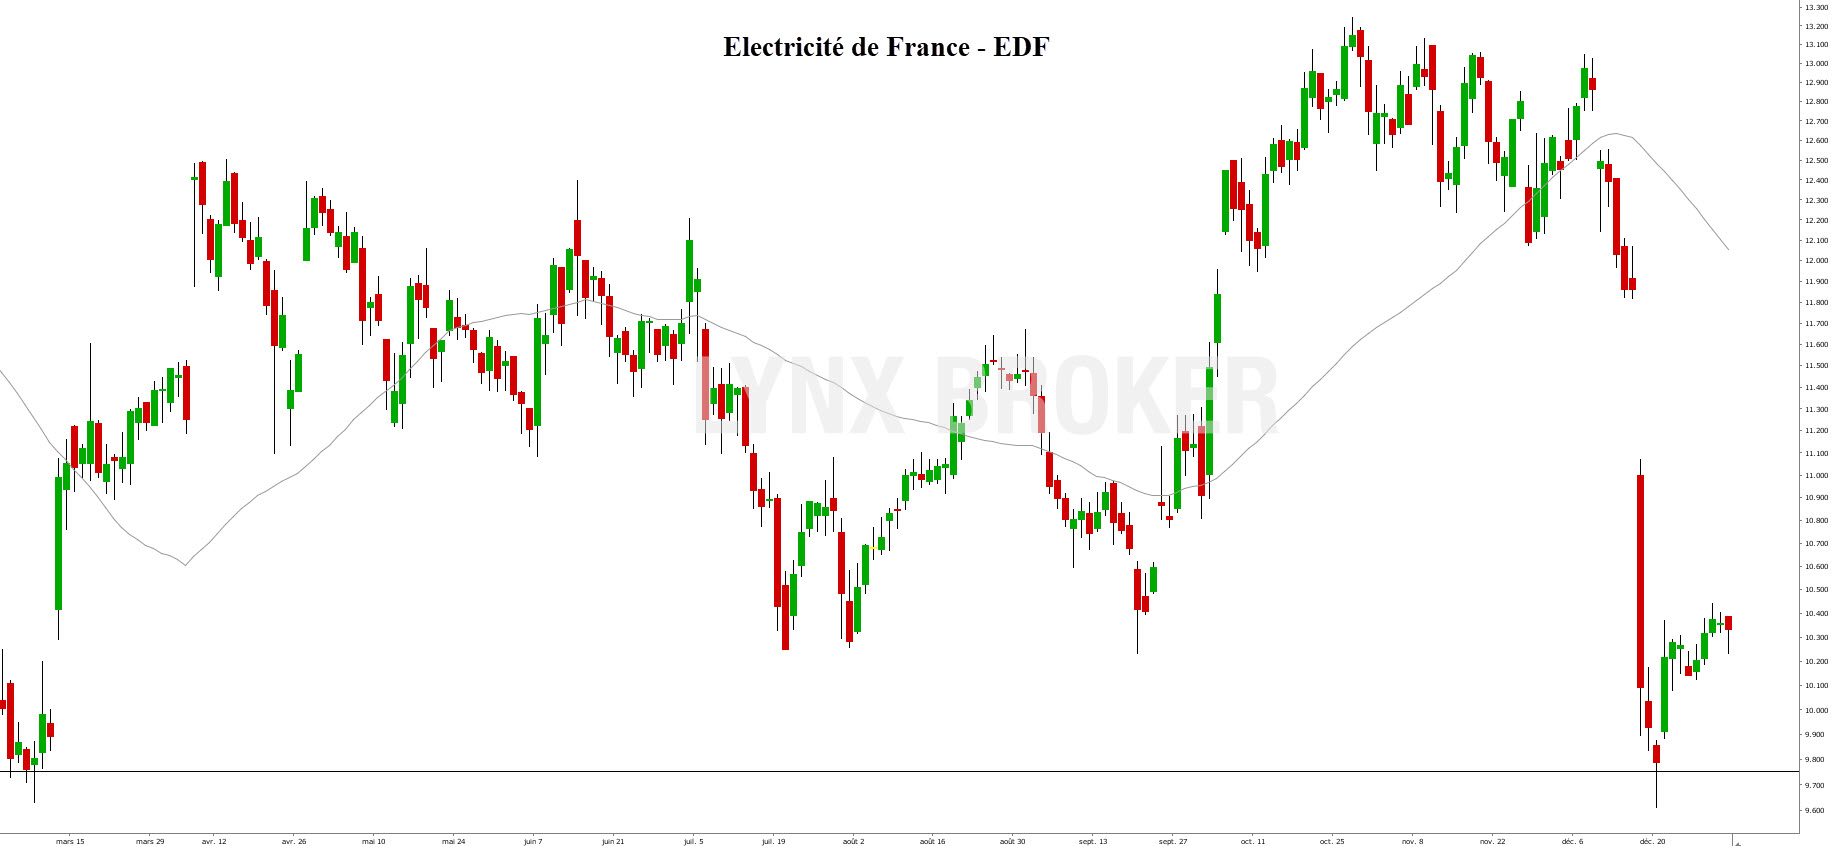 acheter des actions en bourse - action bourse - graphique EDF